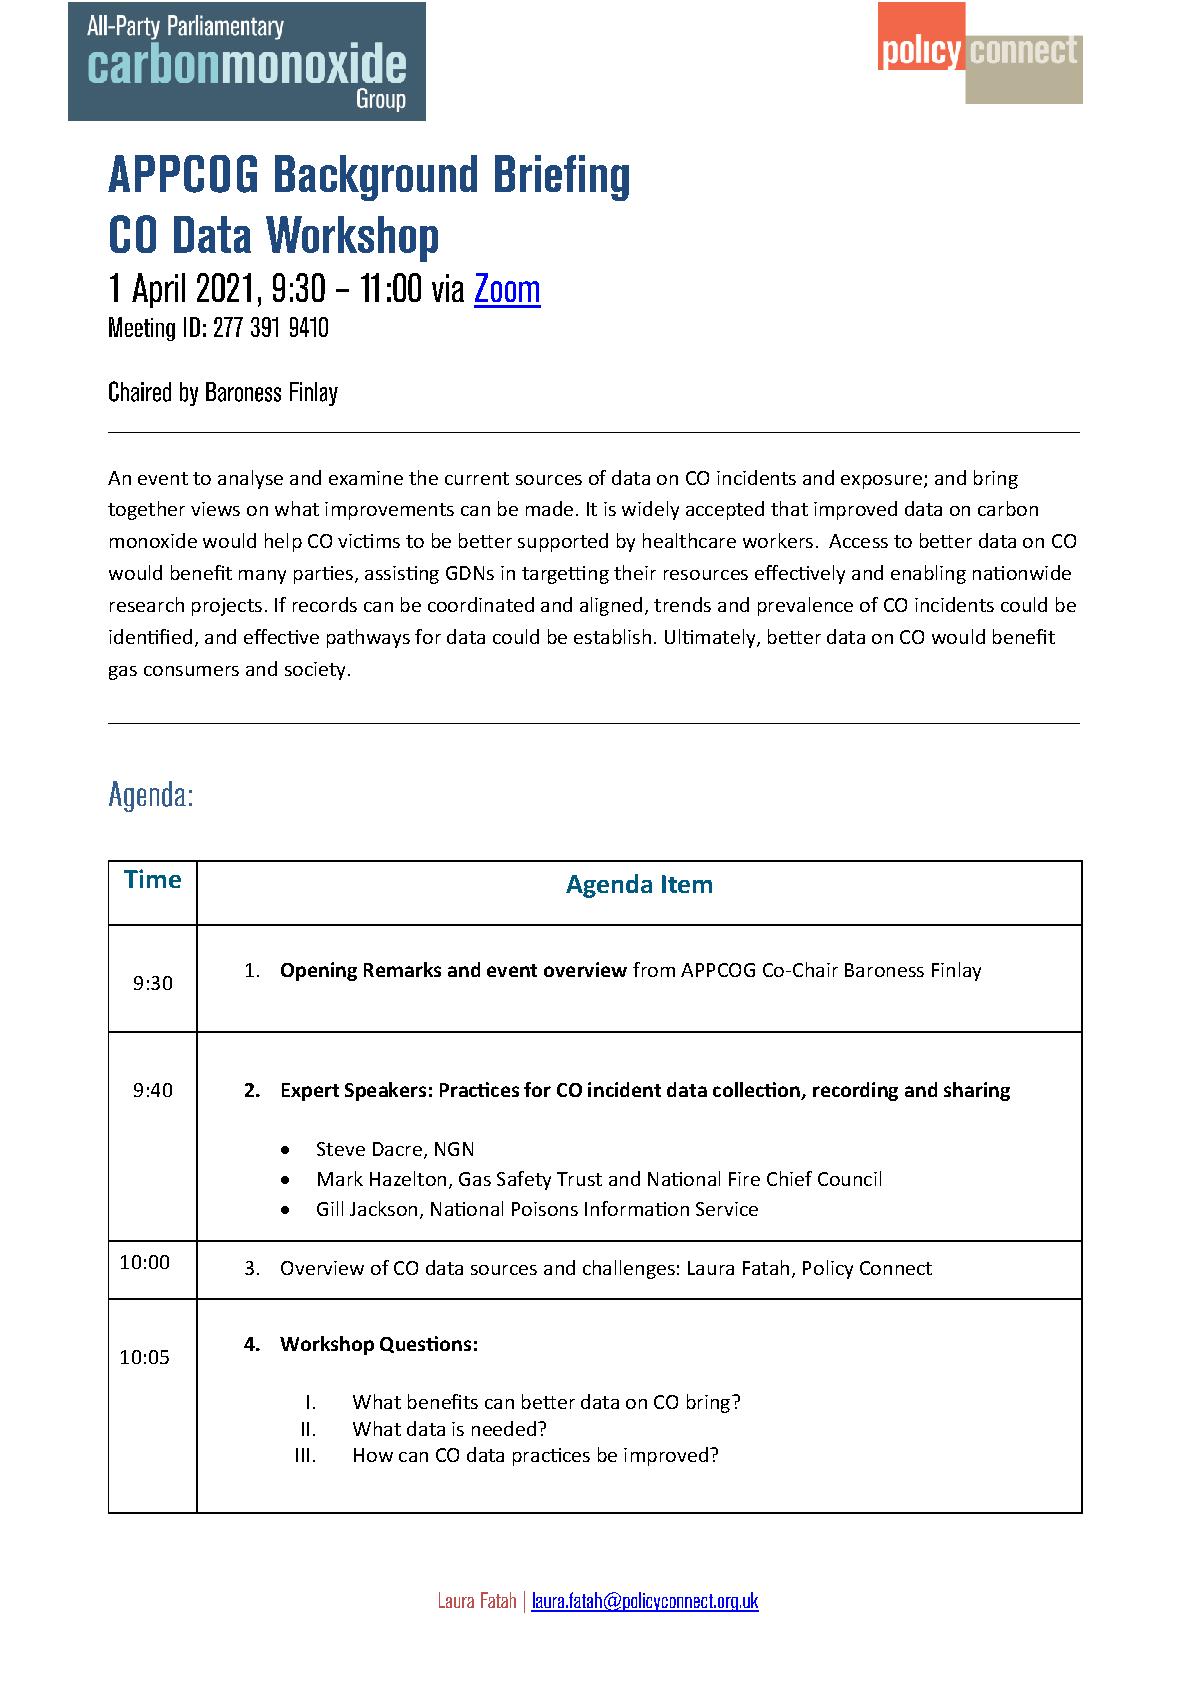 Agenda & Briefing for CO Data Workshop, 1 April 2021